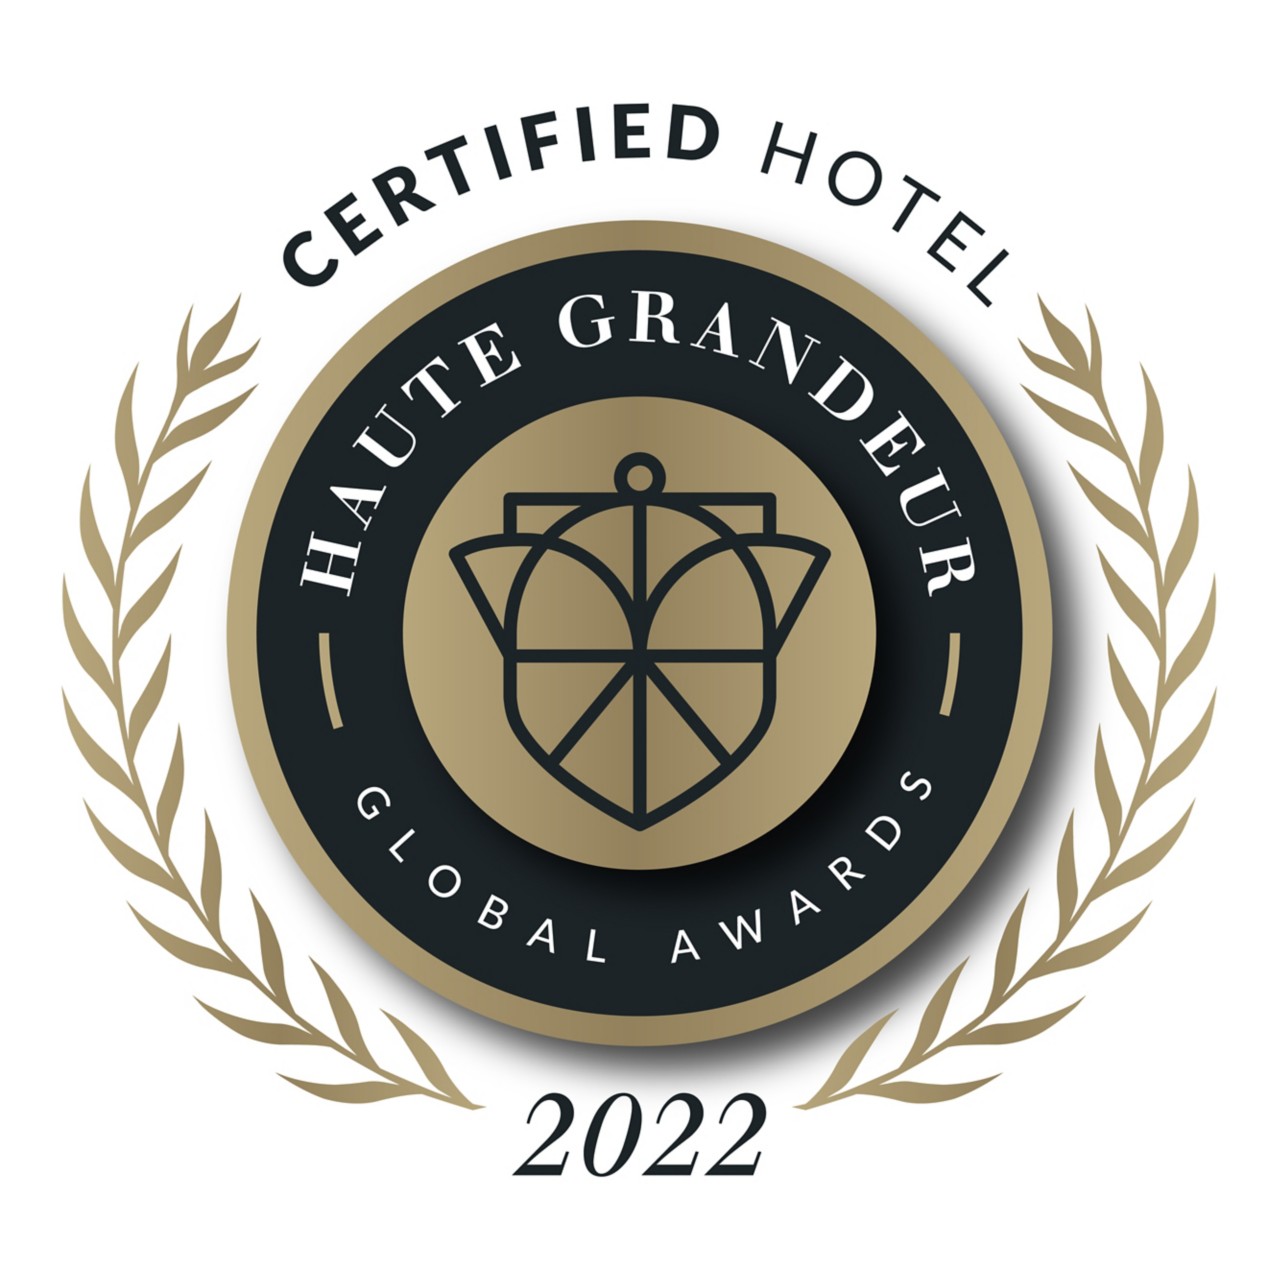 HG_Hotel_BadgeCertified_2022